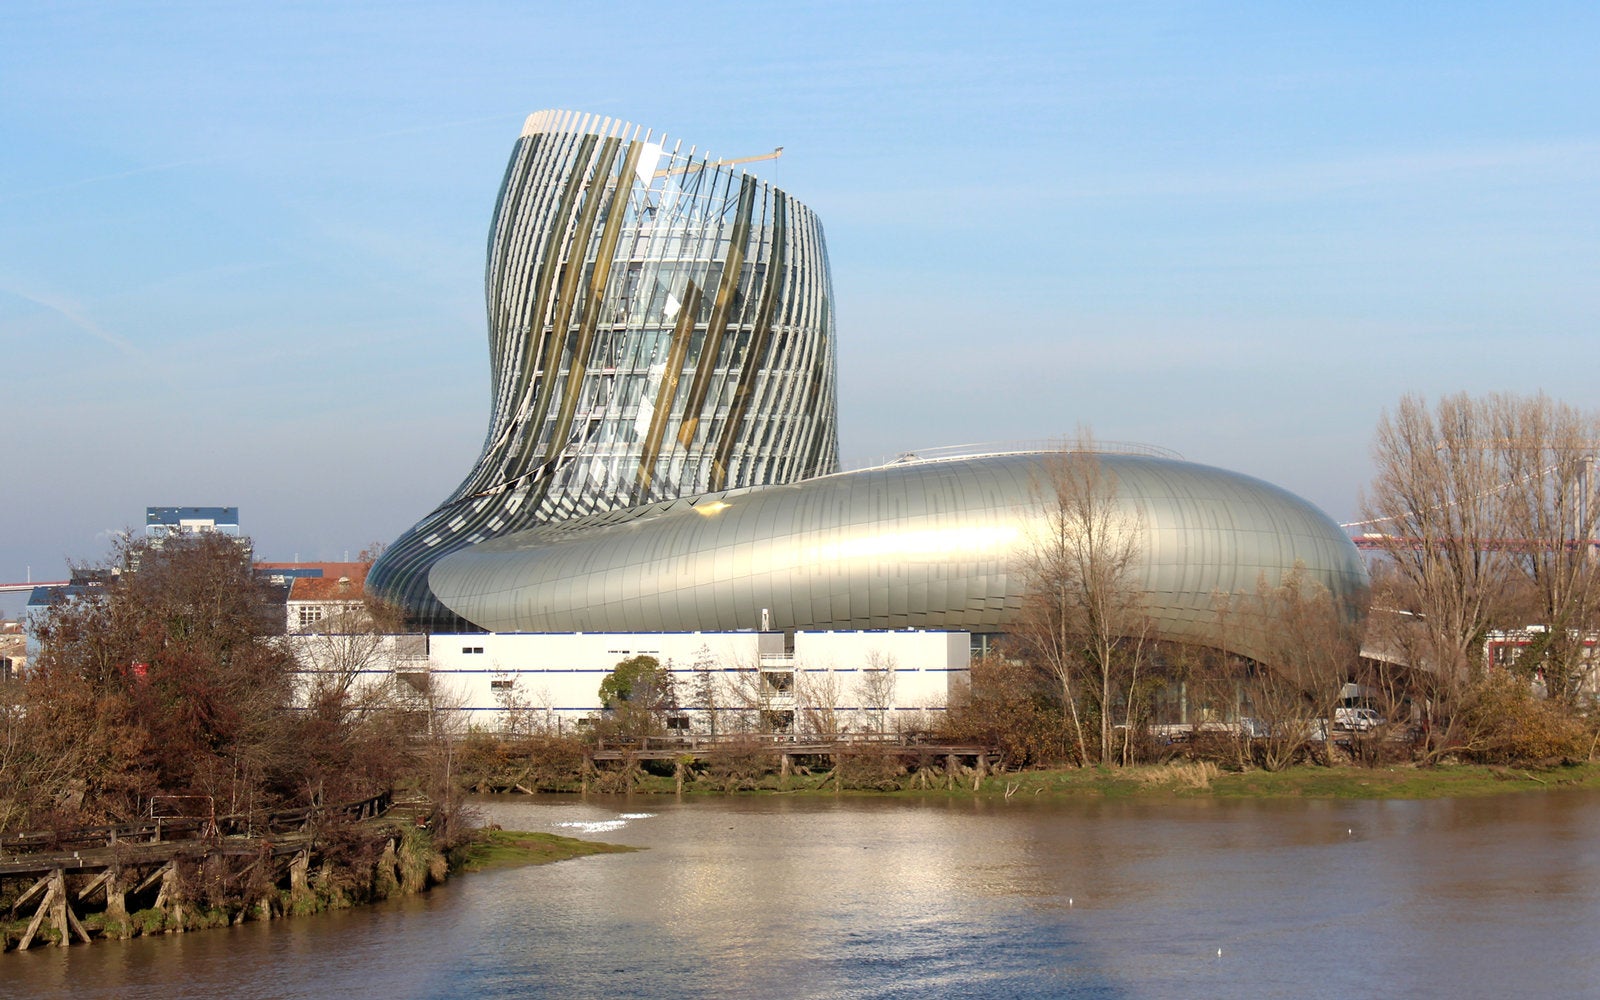 The Cité du Vin